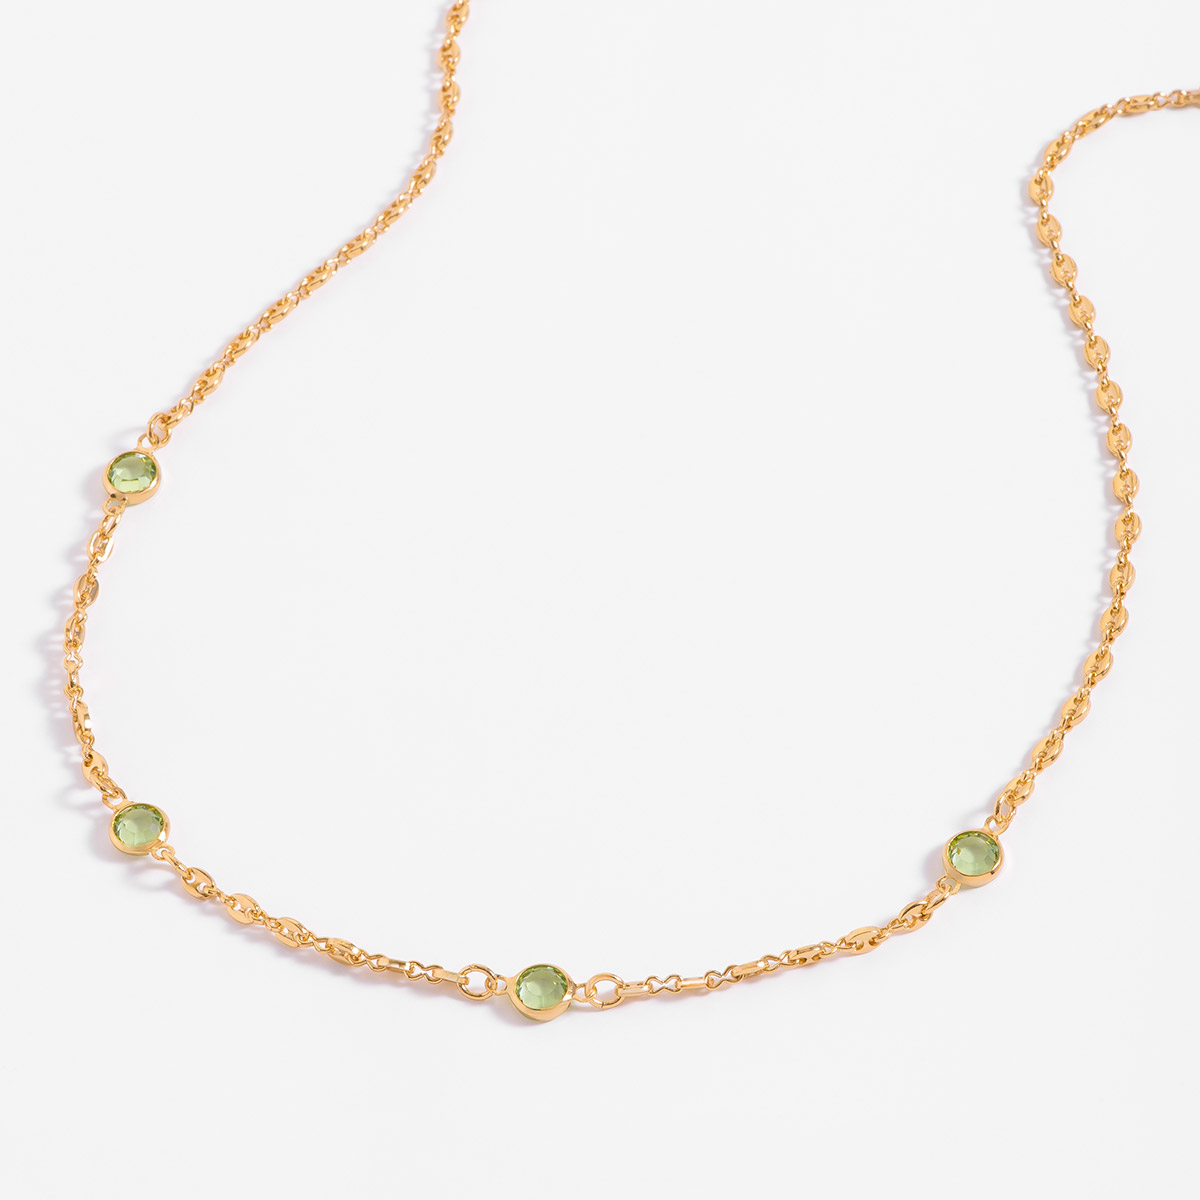 Precioso collar de 45 cm en baño de oro de 18k, adornado con piedras en un encantador tono verde.
-Collar 
-45 cm
-Oro 18K
-Piedras en tono verde